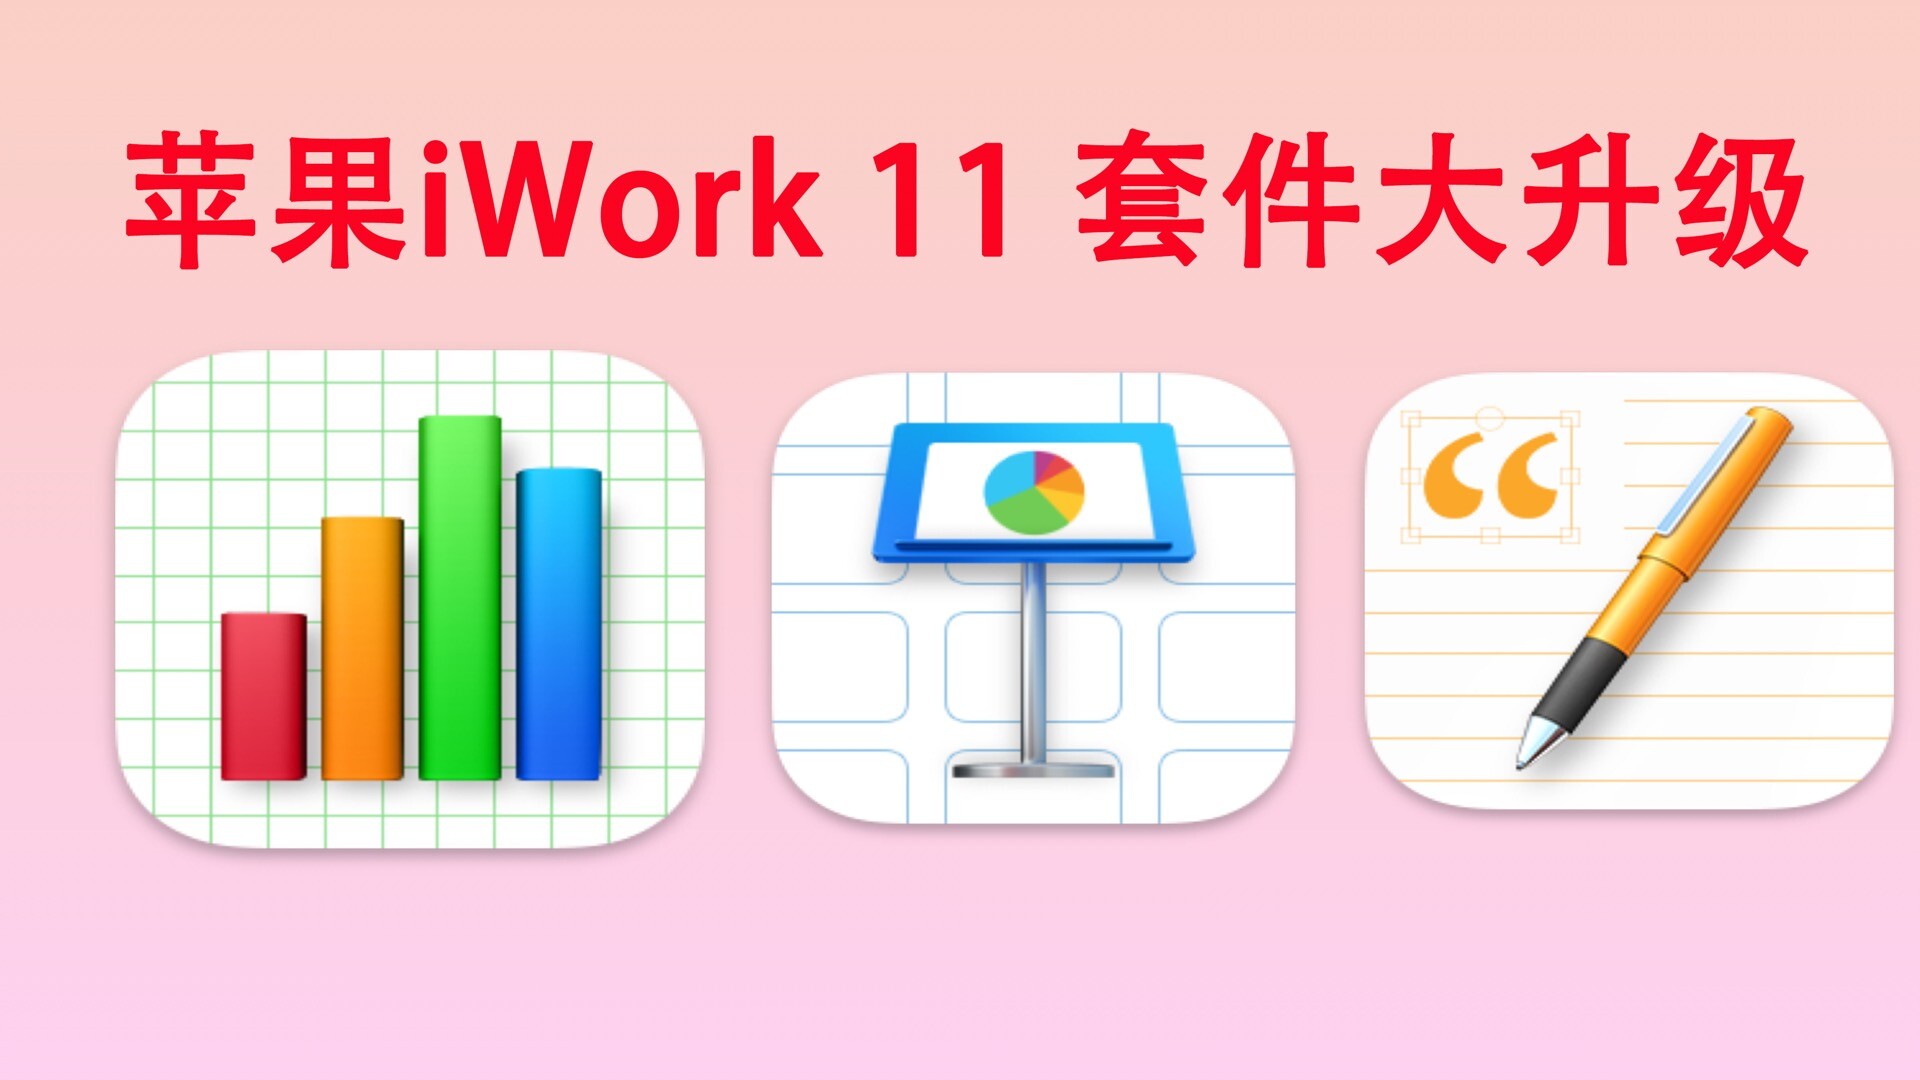 iWork 11 套件大升级，引入了许多新功能